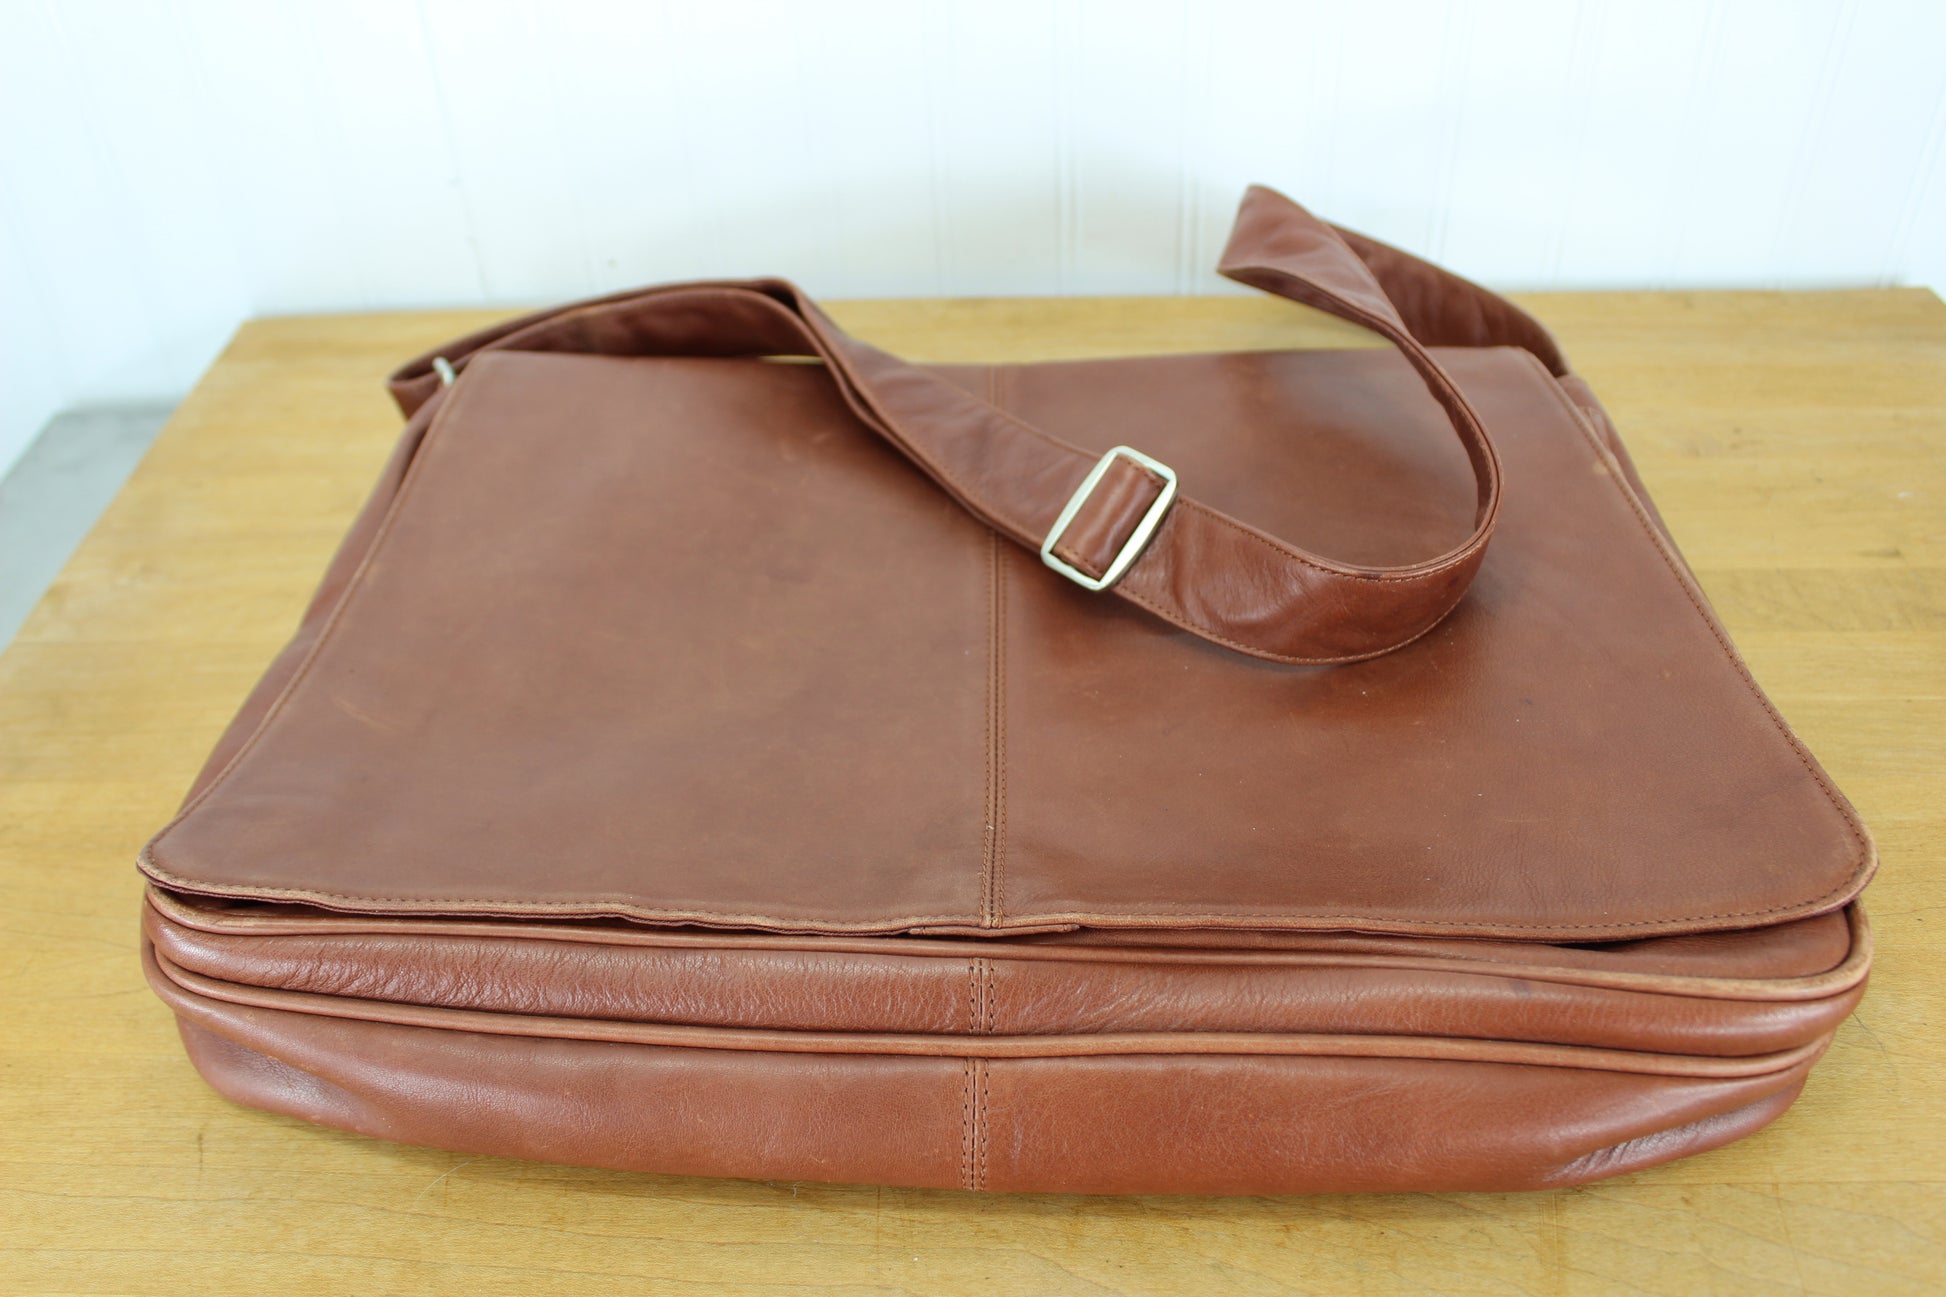 Osgoode Marley Brandy Leather Crossbody Messenger Shoulder Bag 16 1/2" comfortable sleek design